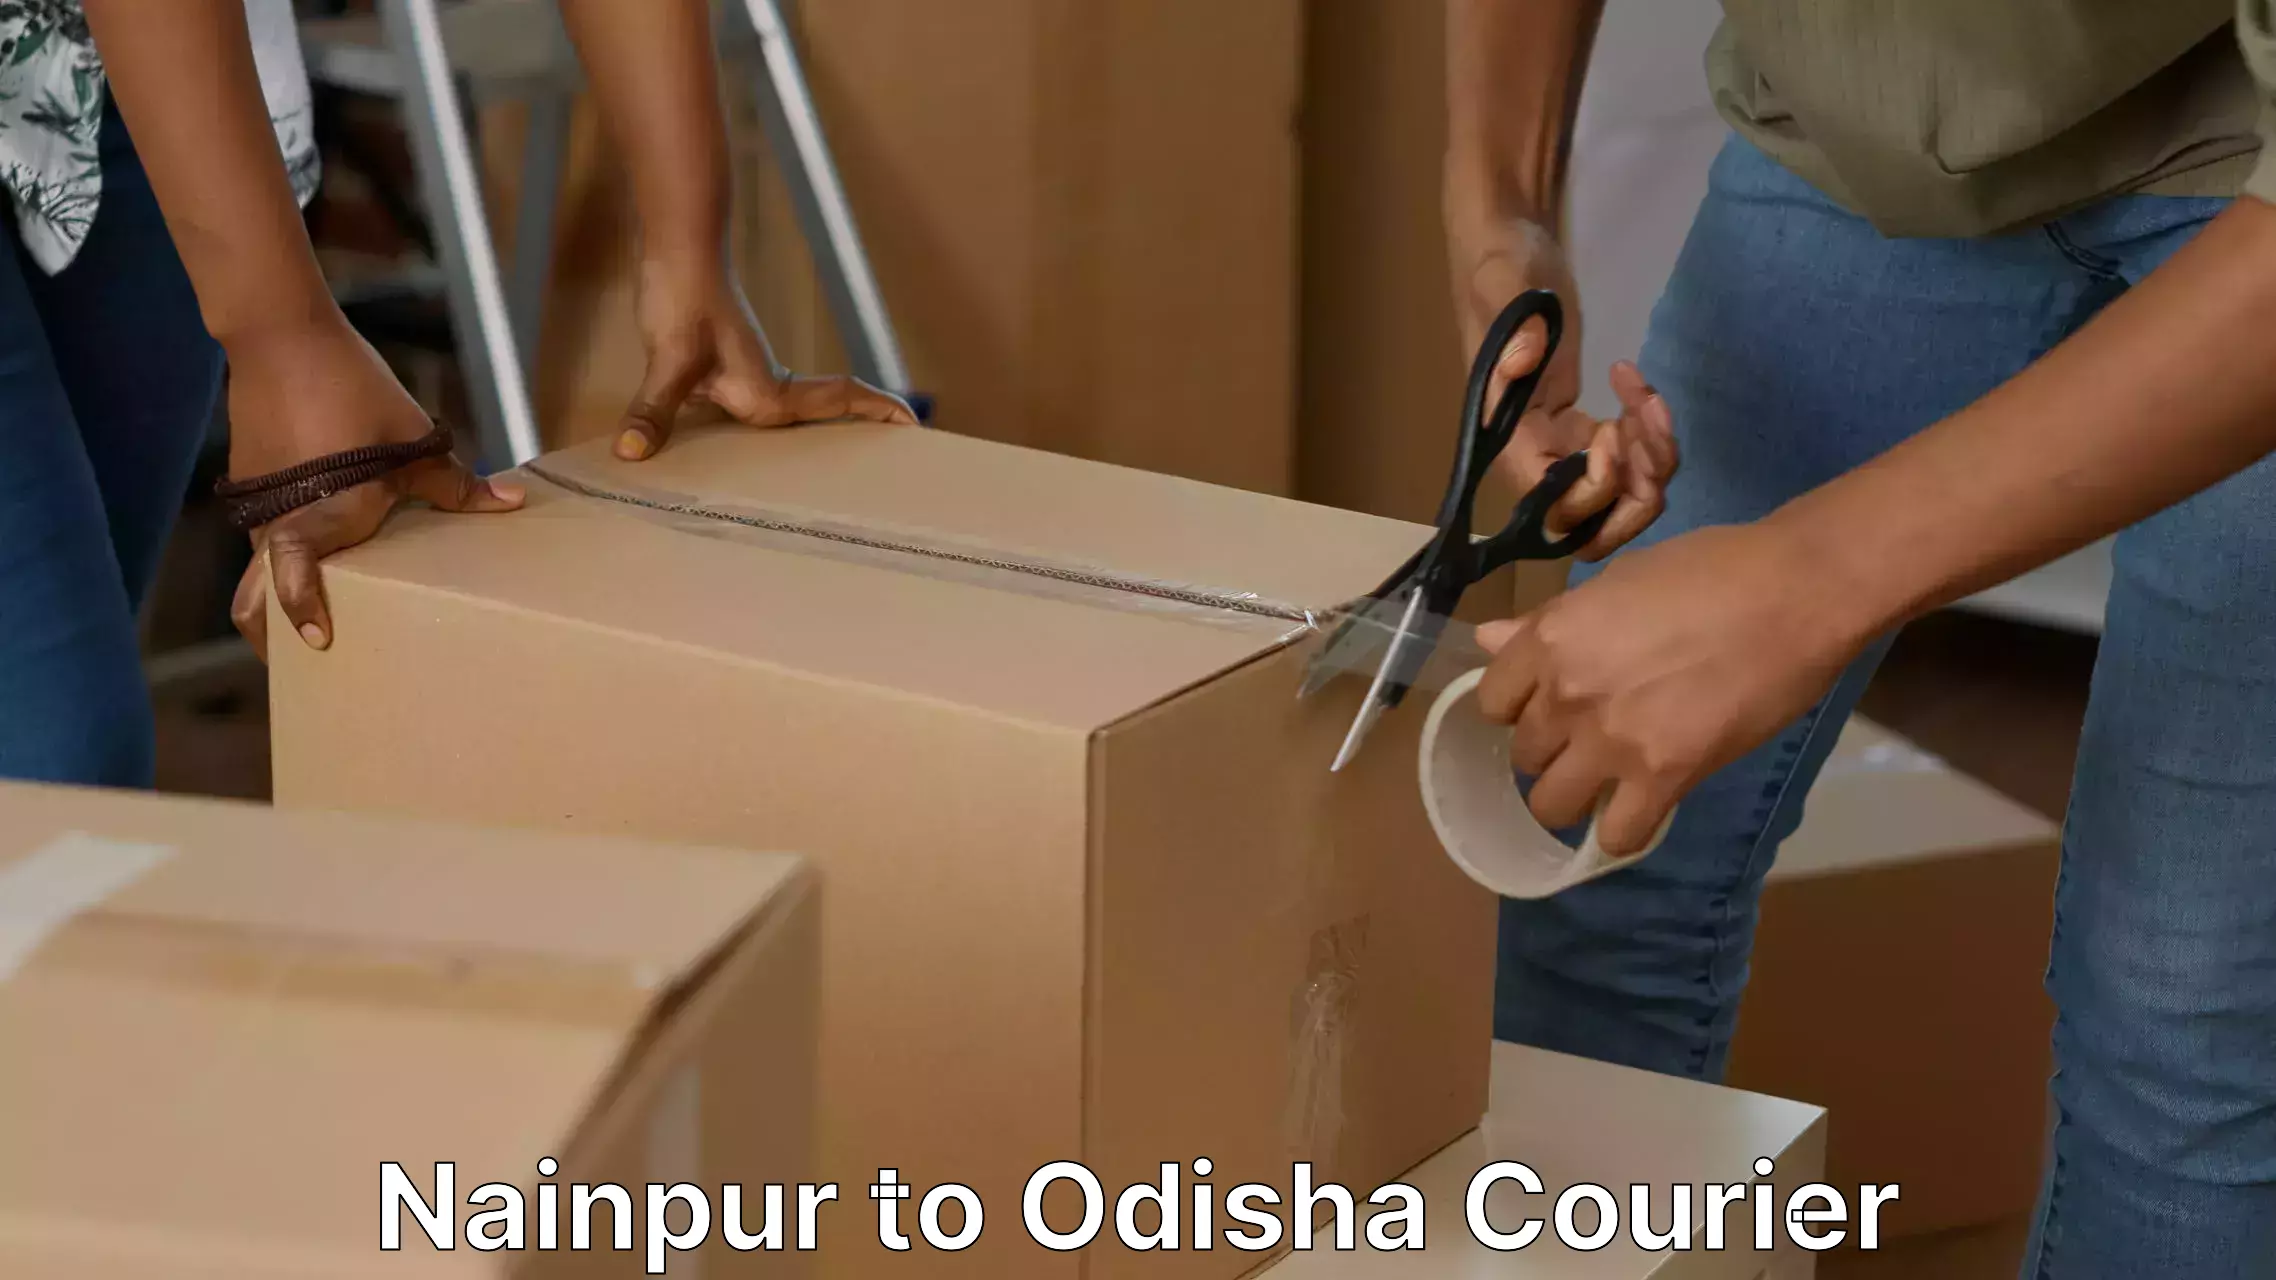 Quick household moving Nainpur to Odisha